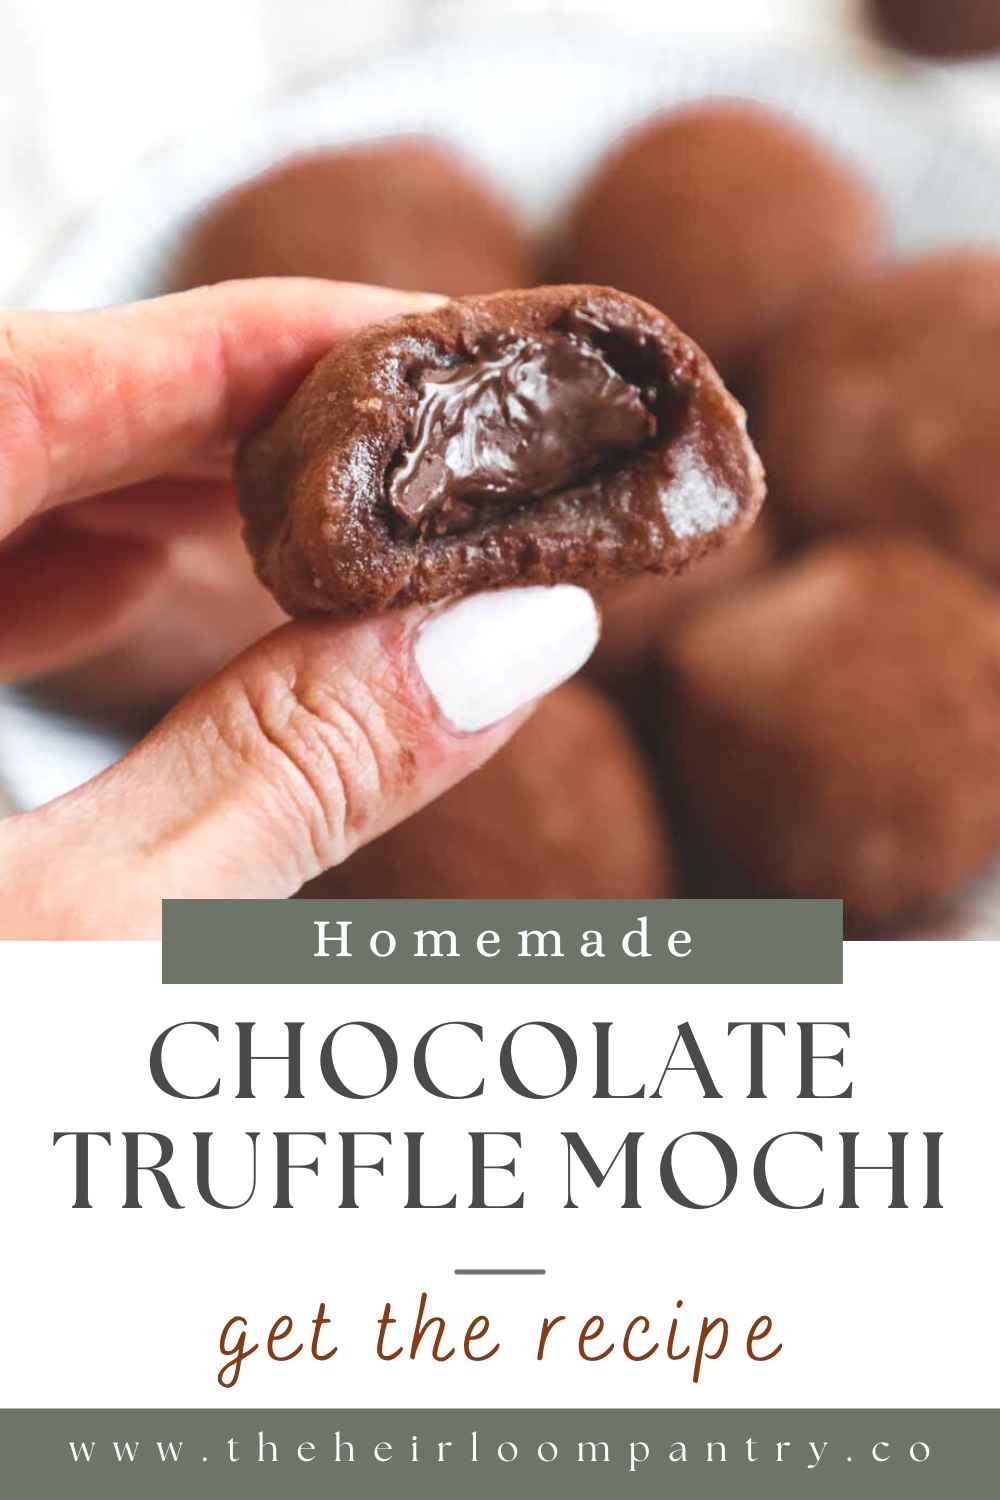 Chocolate truffle mochi Pinterest pin.